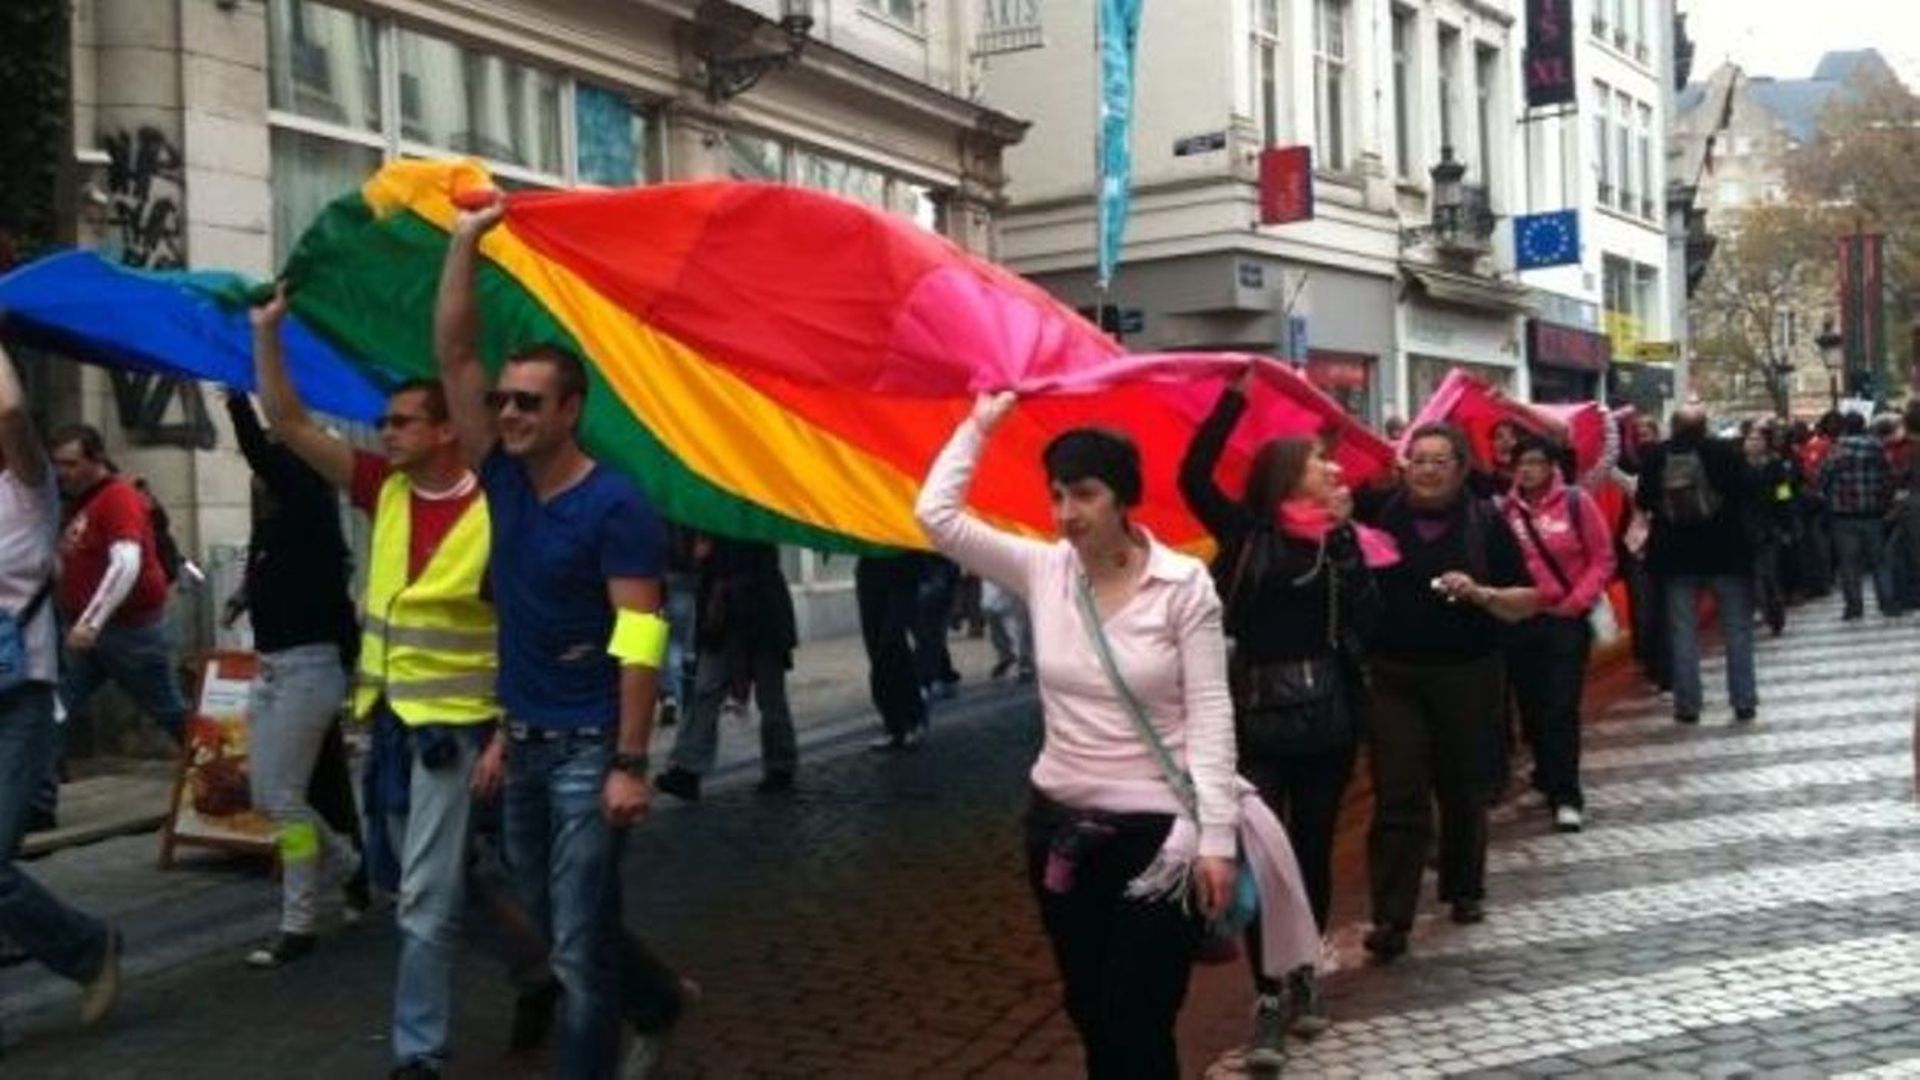 Belgian Pride: "il faut former le personnel communal pour qu'on ne se fasse pas insulter quand on se marie"